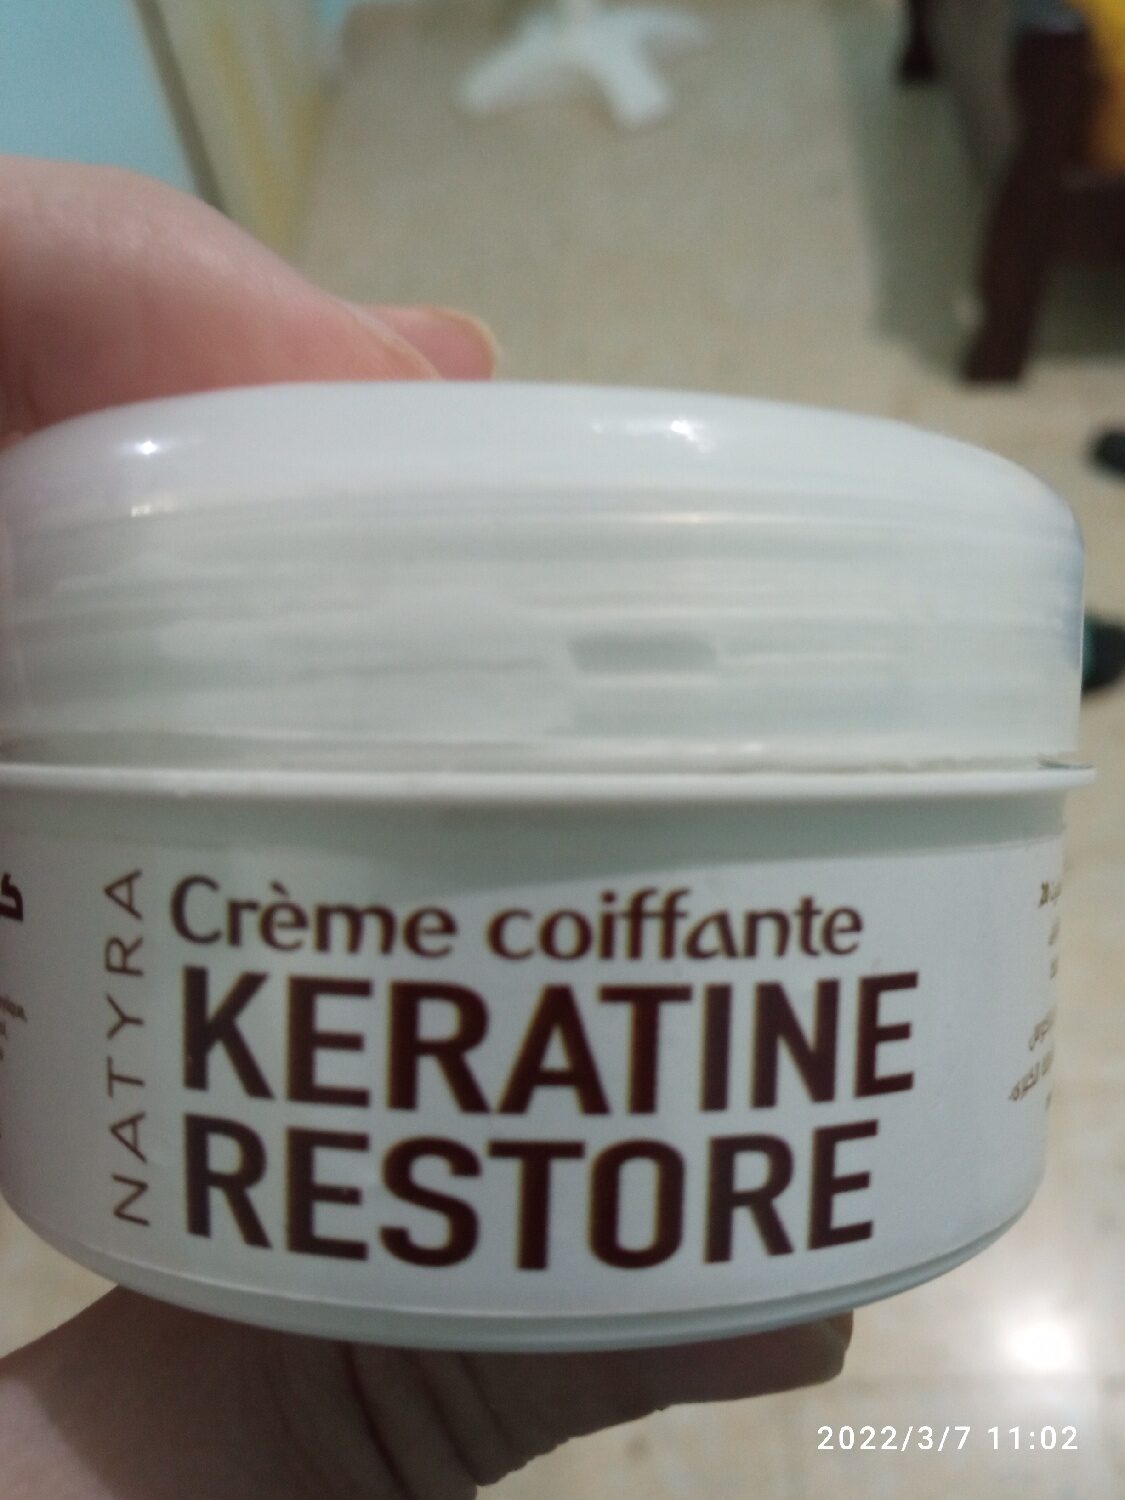 Crème confiante lesaine restore - Product - xx